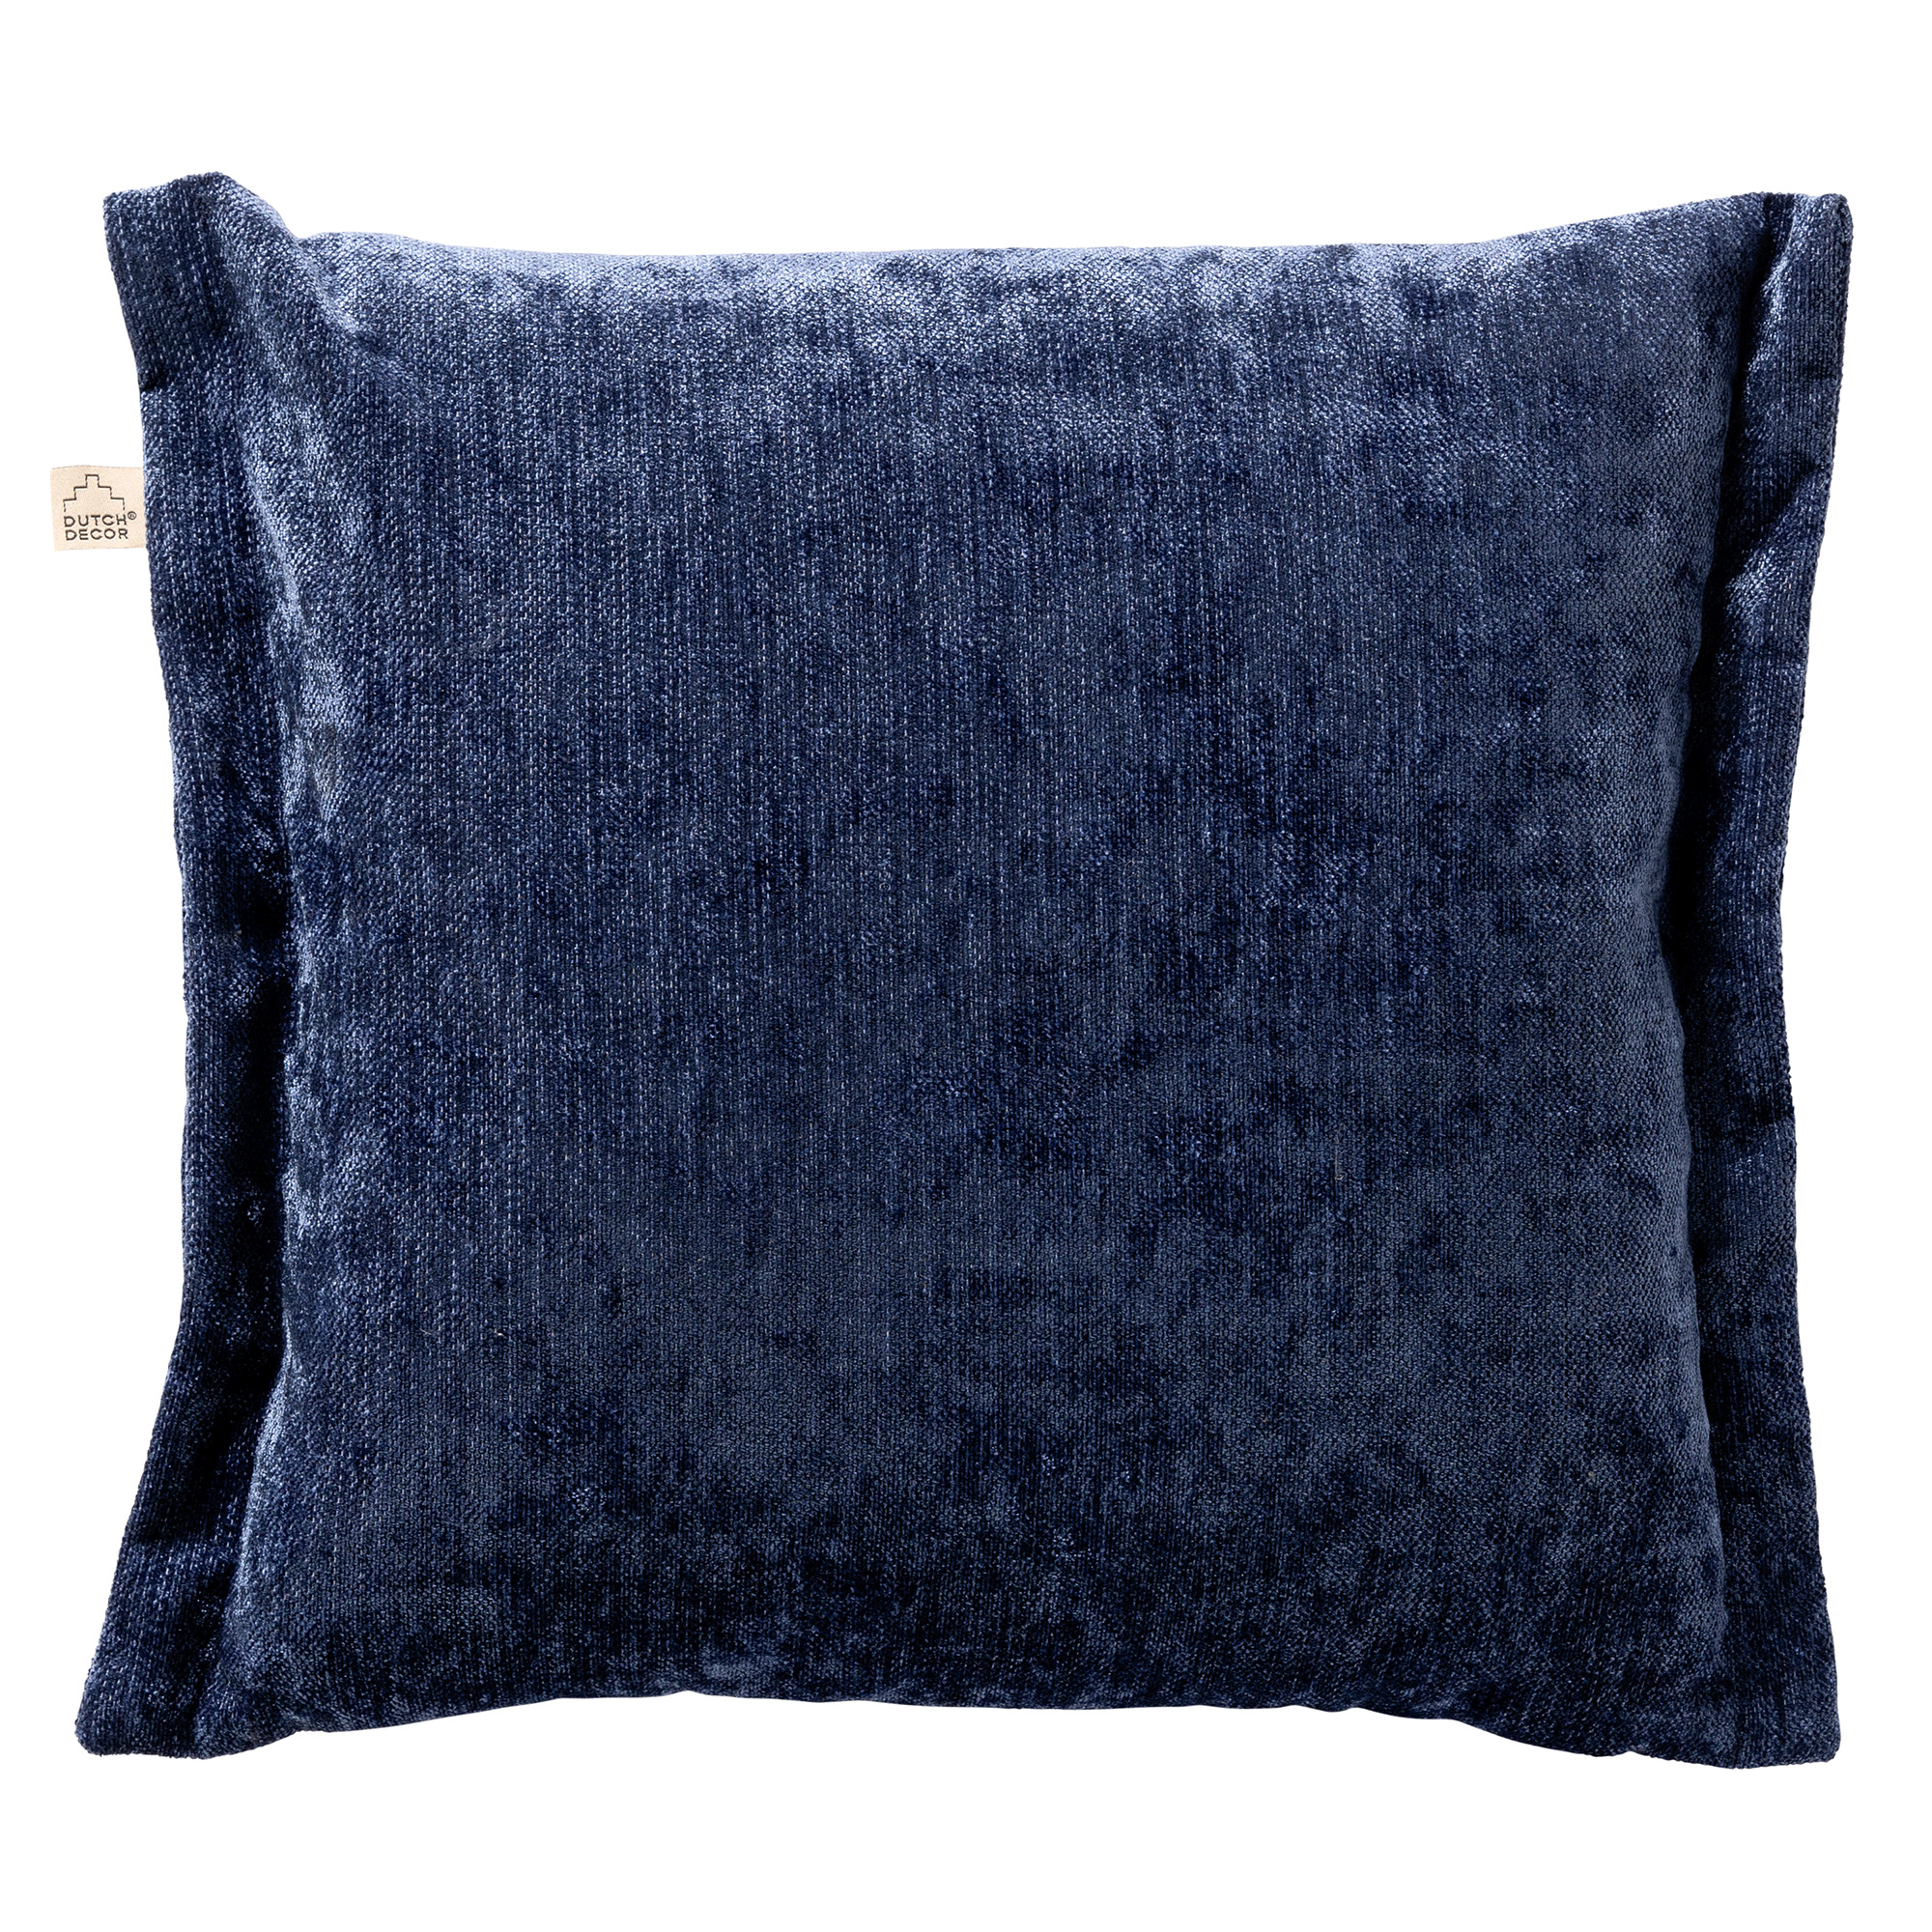 LEWIS - Cushion 45x45 cm - Insignia Blue - blue